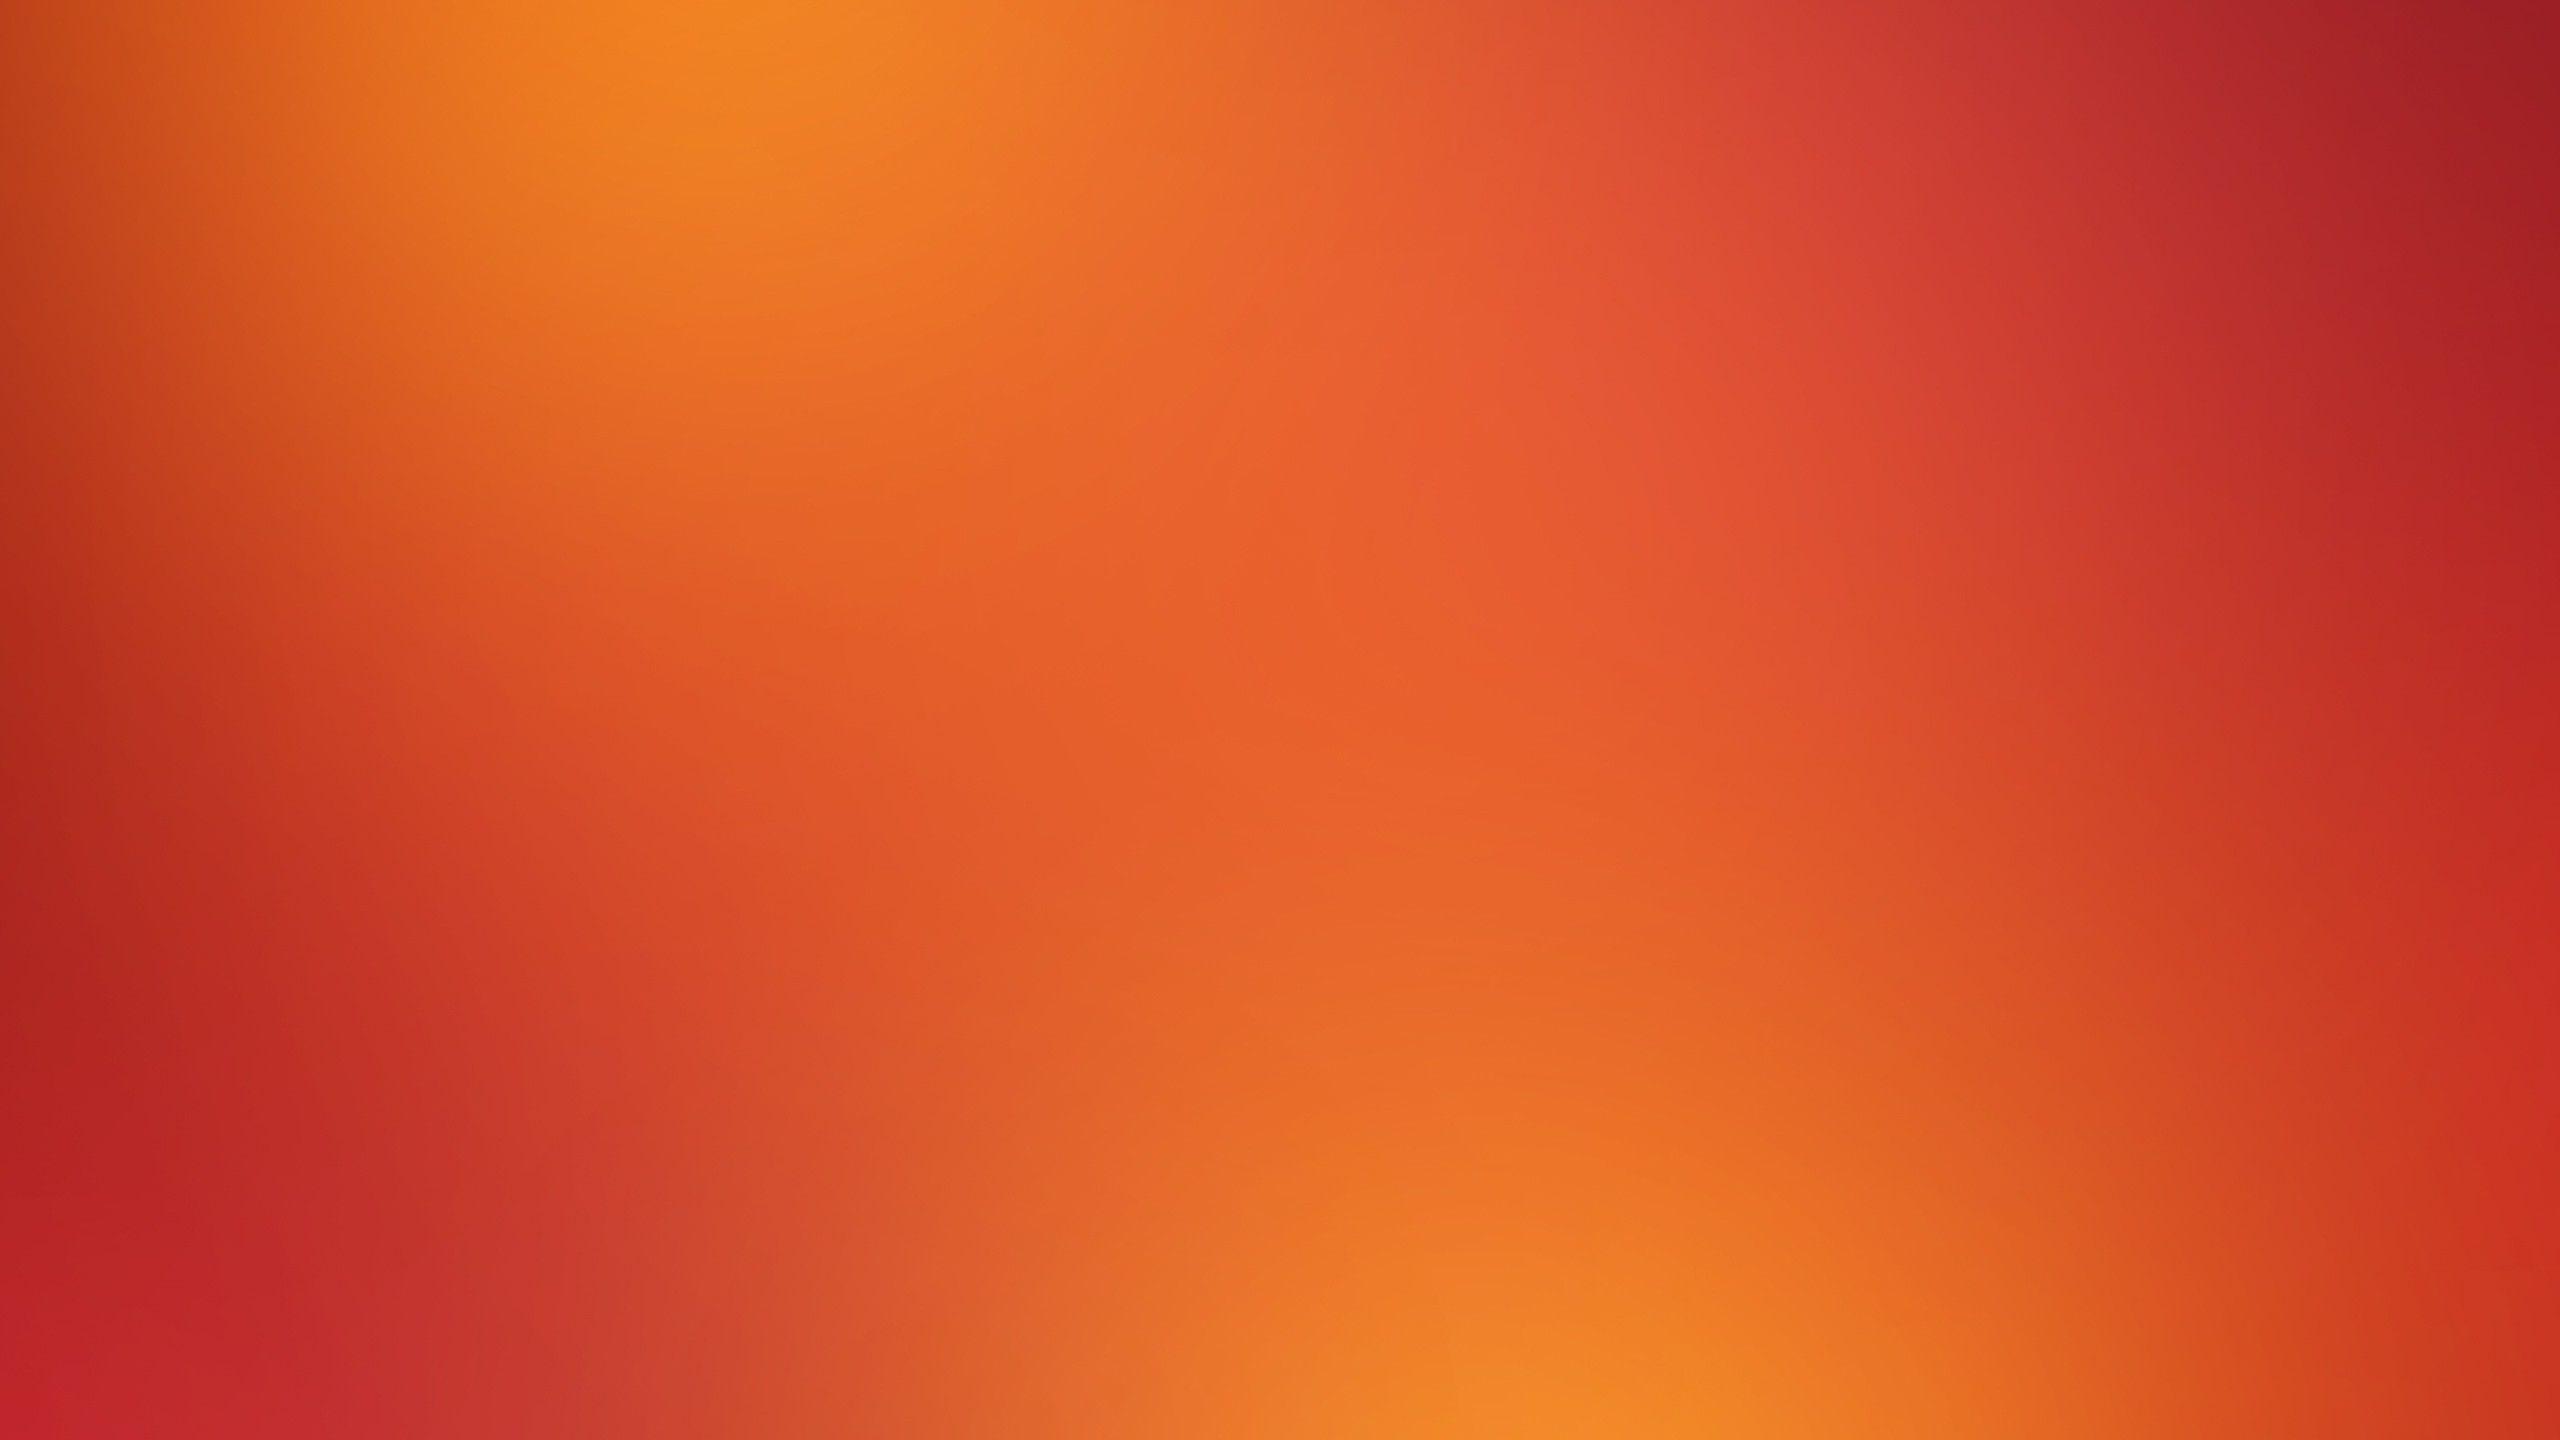 Nền Red and Orange: Những tông màu đỏ và cam tươi tắn sẽ mang đến cho bạn cảm giác năng động và sôi động. Hãy xem những hình ảnh với nền Red and Orange để tận hưởng sự tươi mới của mùa hè!